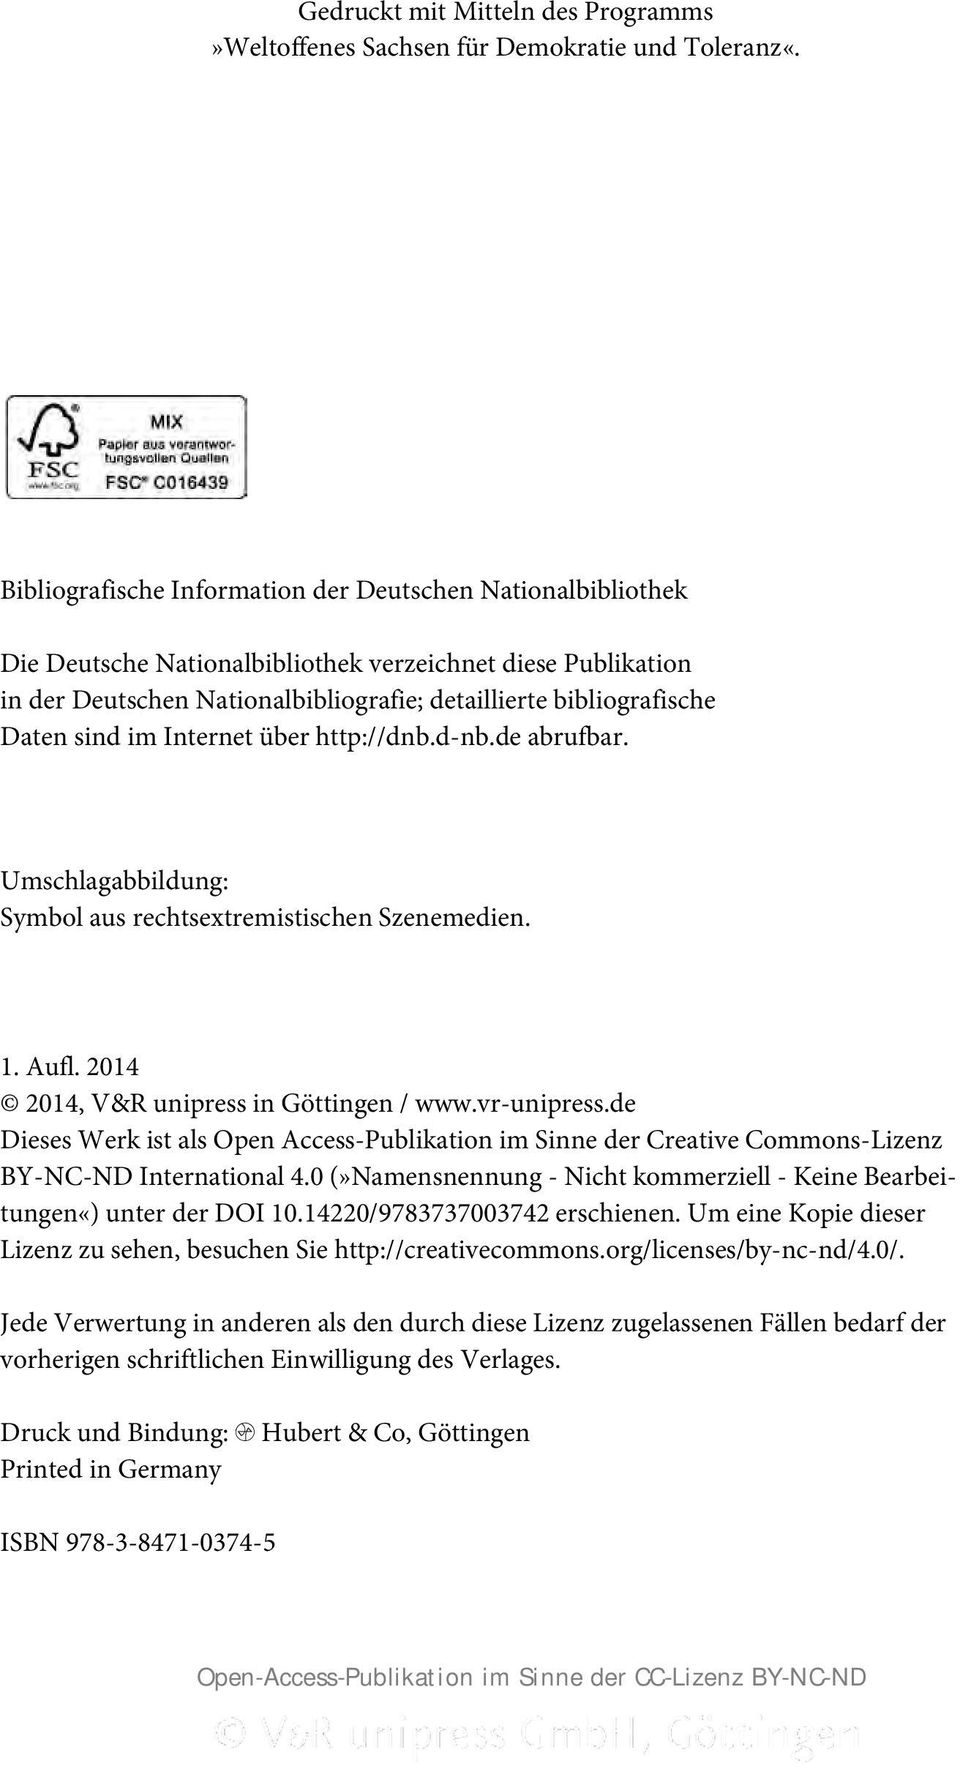 sind im Internet über http://dnb.d-nb.de abrufbar. Umschlagabbildung: Symbol aus rechtsextremistischen Szenemedien. 1. Aufl. 2014 2014, V&R unipress in Göttingen / www.vr-unipress.